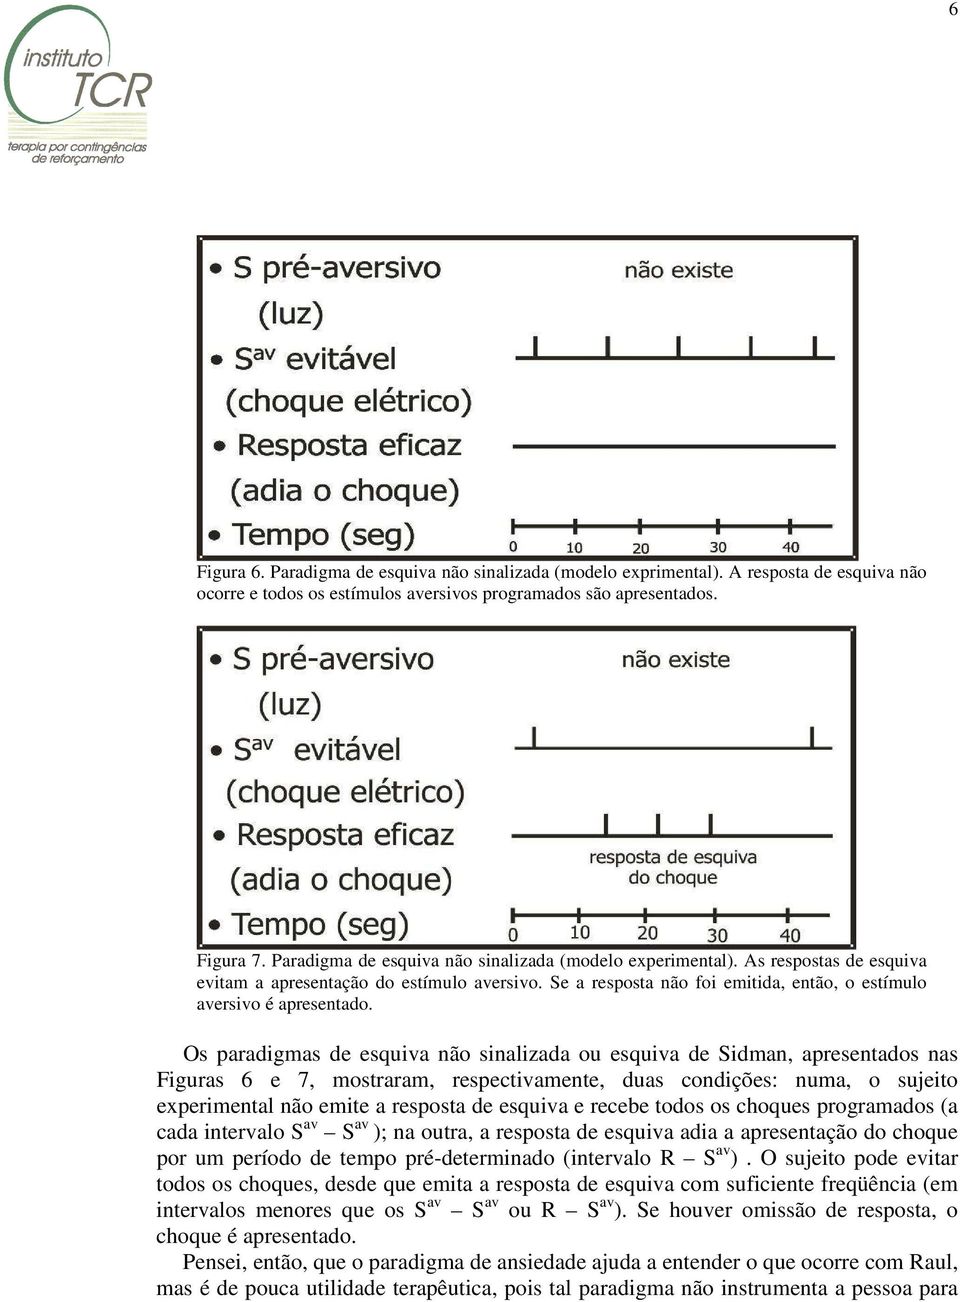 Os paradigmas de esquiva não sinalizada ou esquiva de Sidman, apresentados nas Figuras 6 e 7, mostraram, respectivamente, duas condições: numa, o sujeito experimental não emite a resposta de esquiva